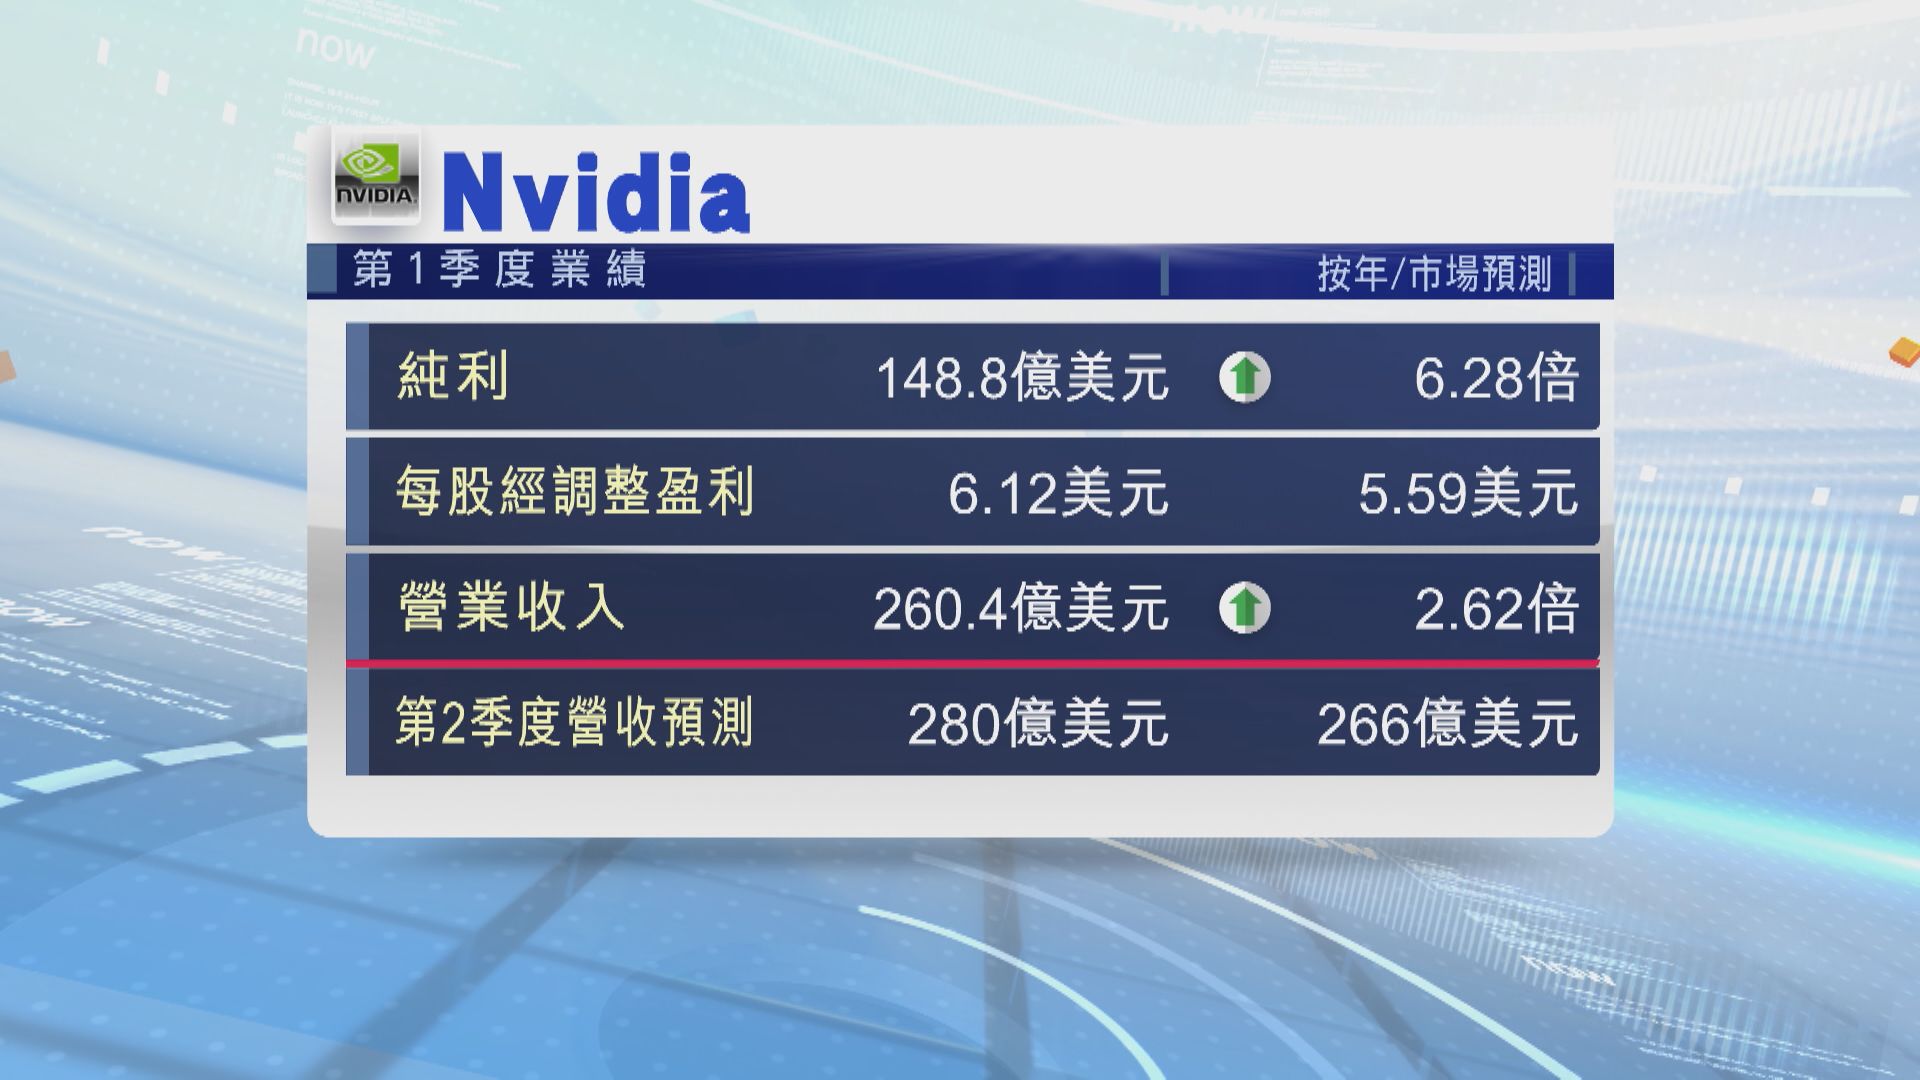 【AI晶片股王業績】Nvidia季績勝預期 股息大增1.5倍 宣布1拆10